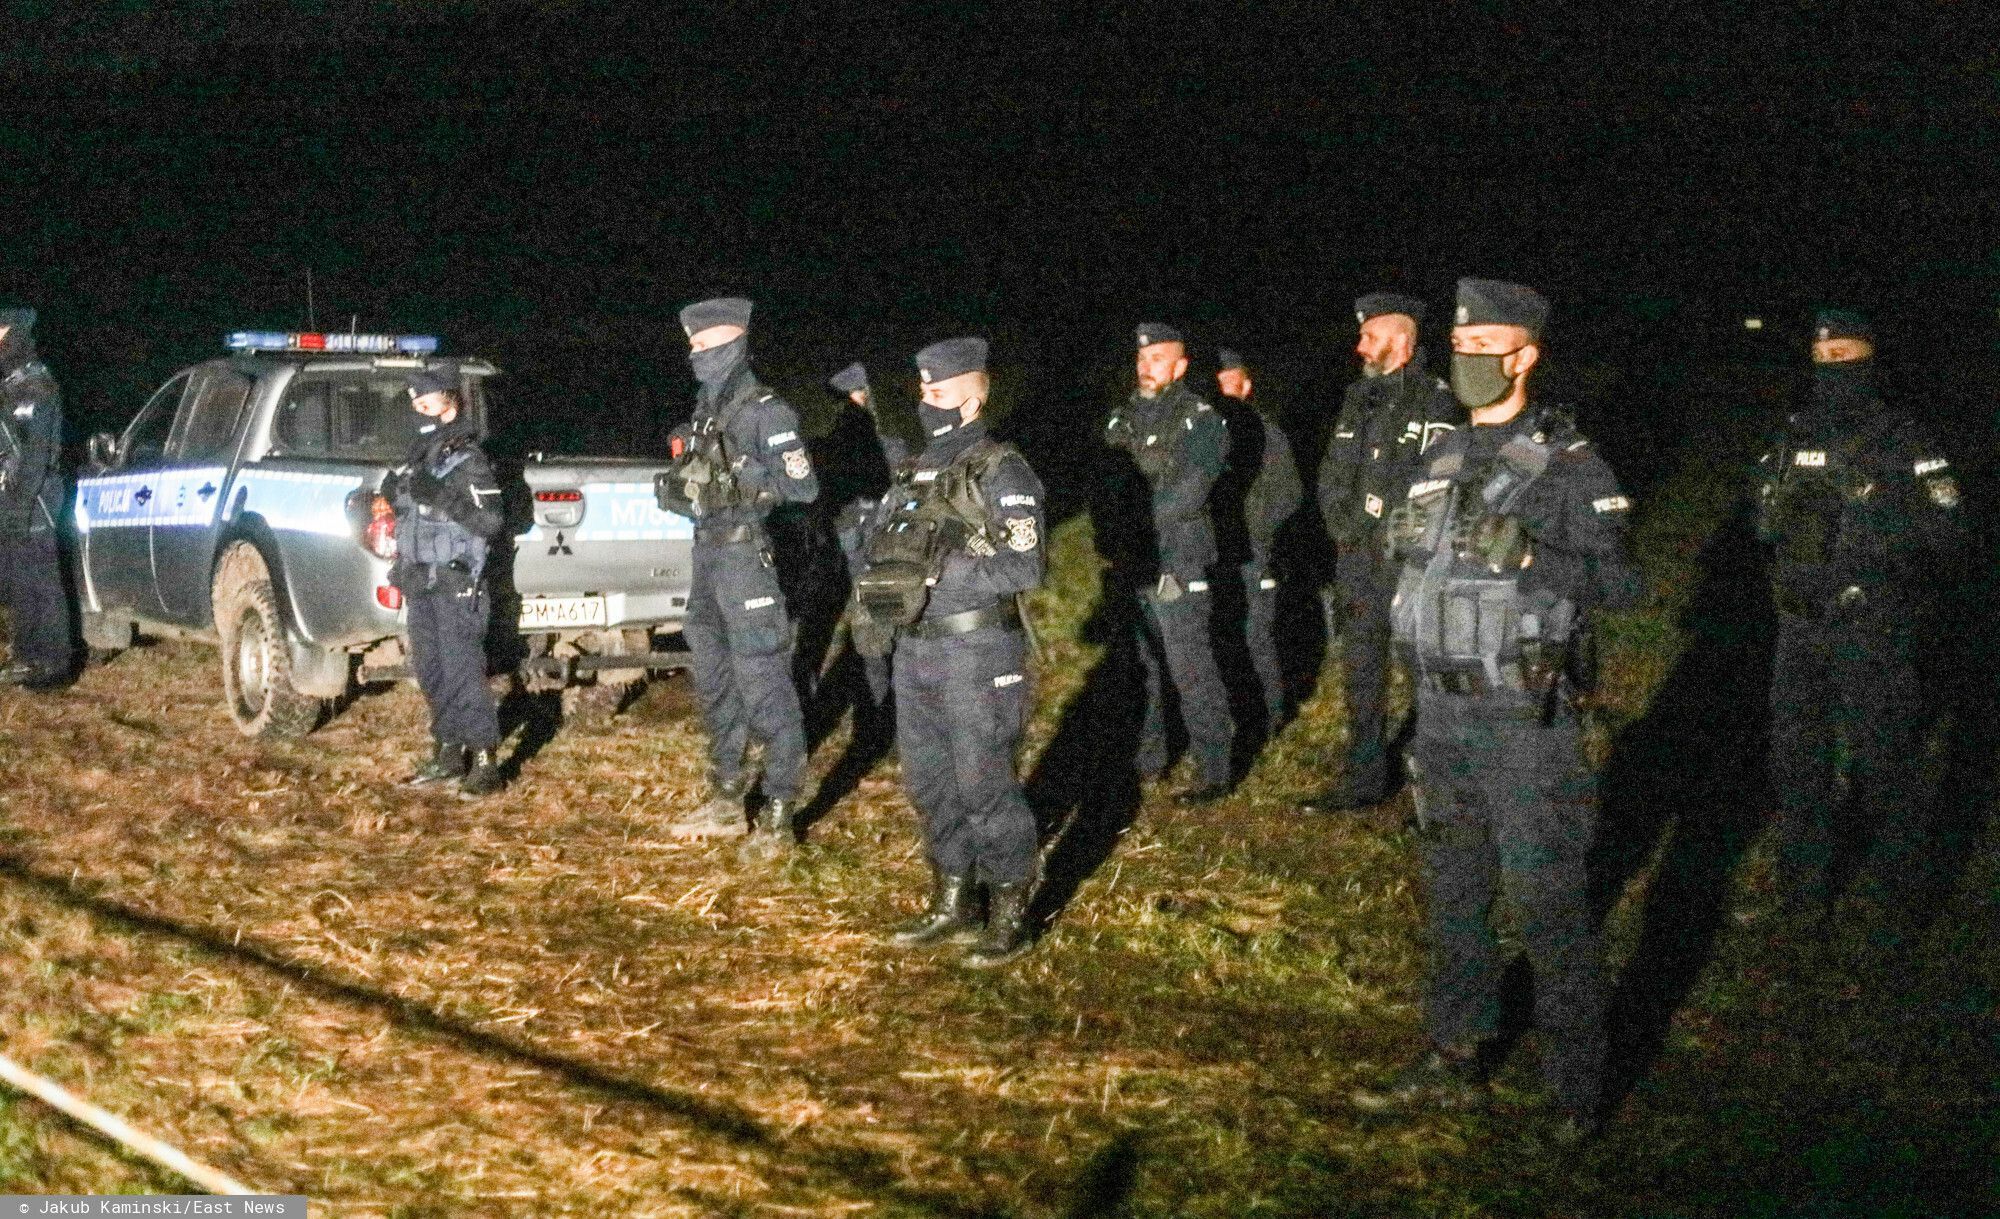 W nocy ze środy na czwartek policja uzbrojona w broń przeszukała siedzibę wolontariuszy pomagającym uchodźcom na granicy polsko-białoruskiej